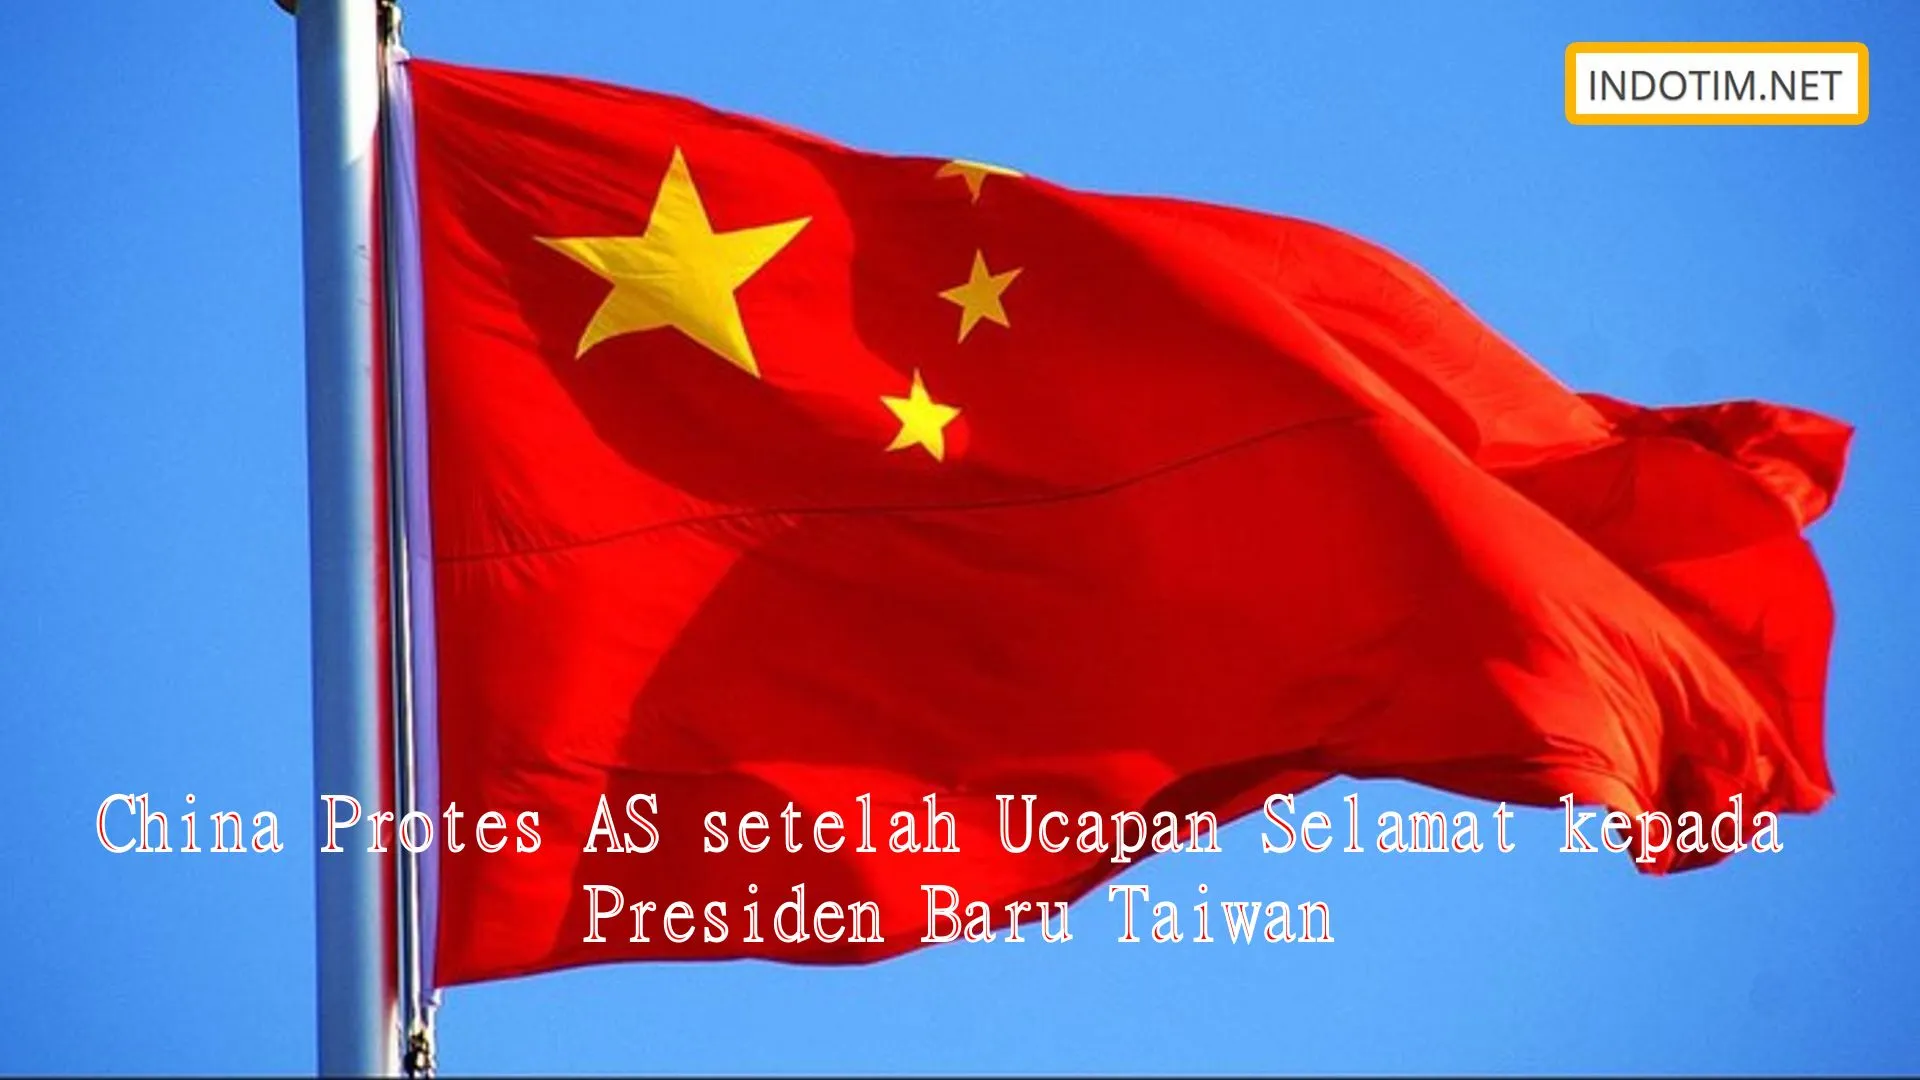 China Protes AS setelah Ucapan Selamat kepada Presiden Baru Taiwan